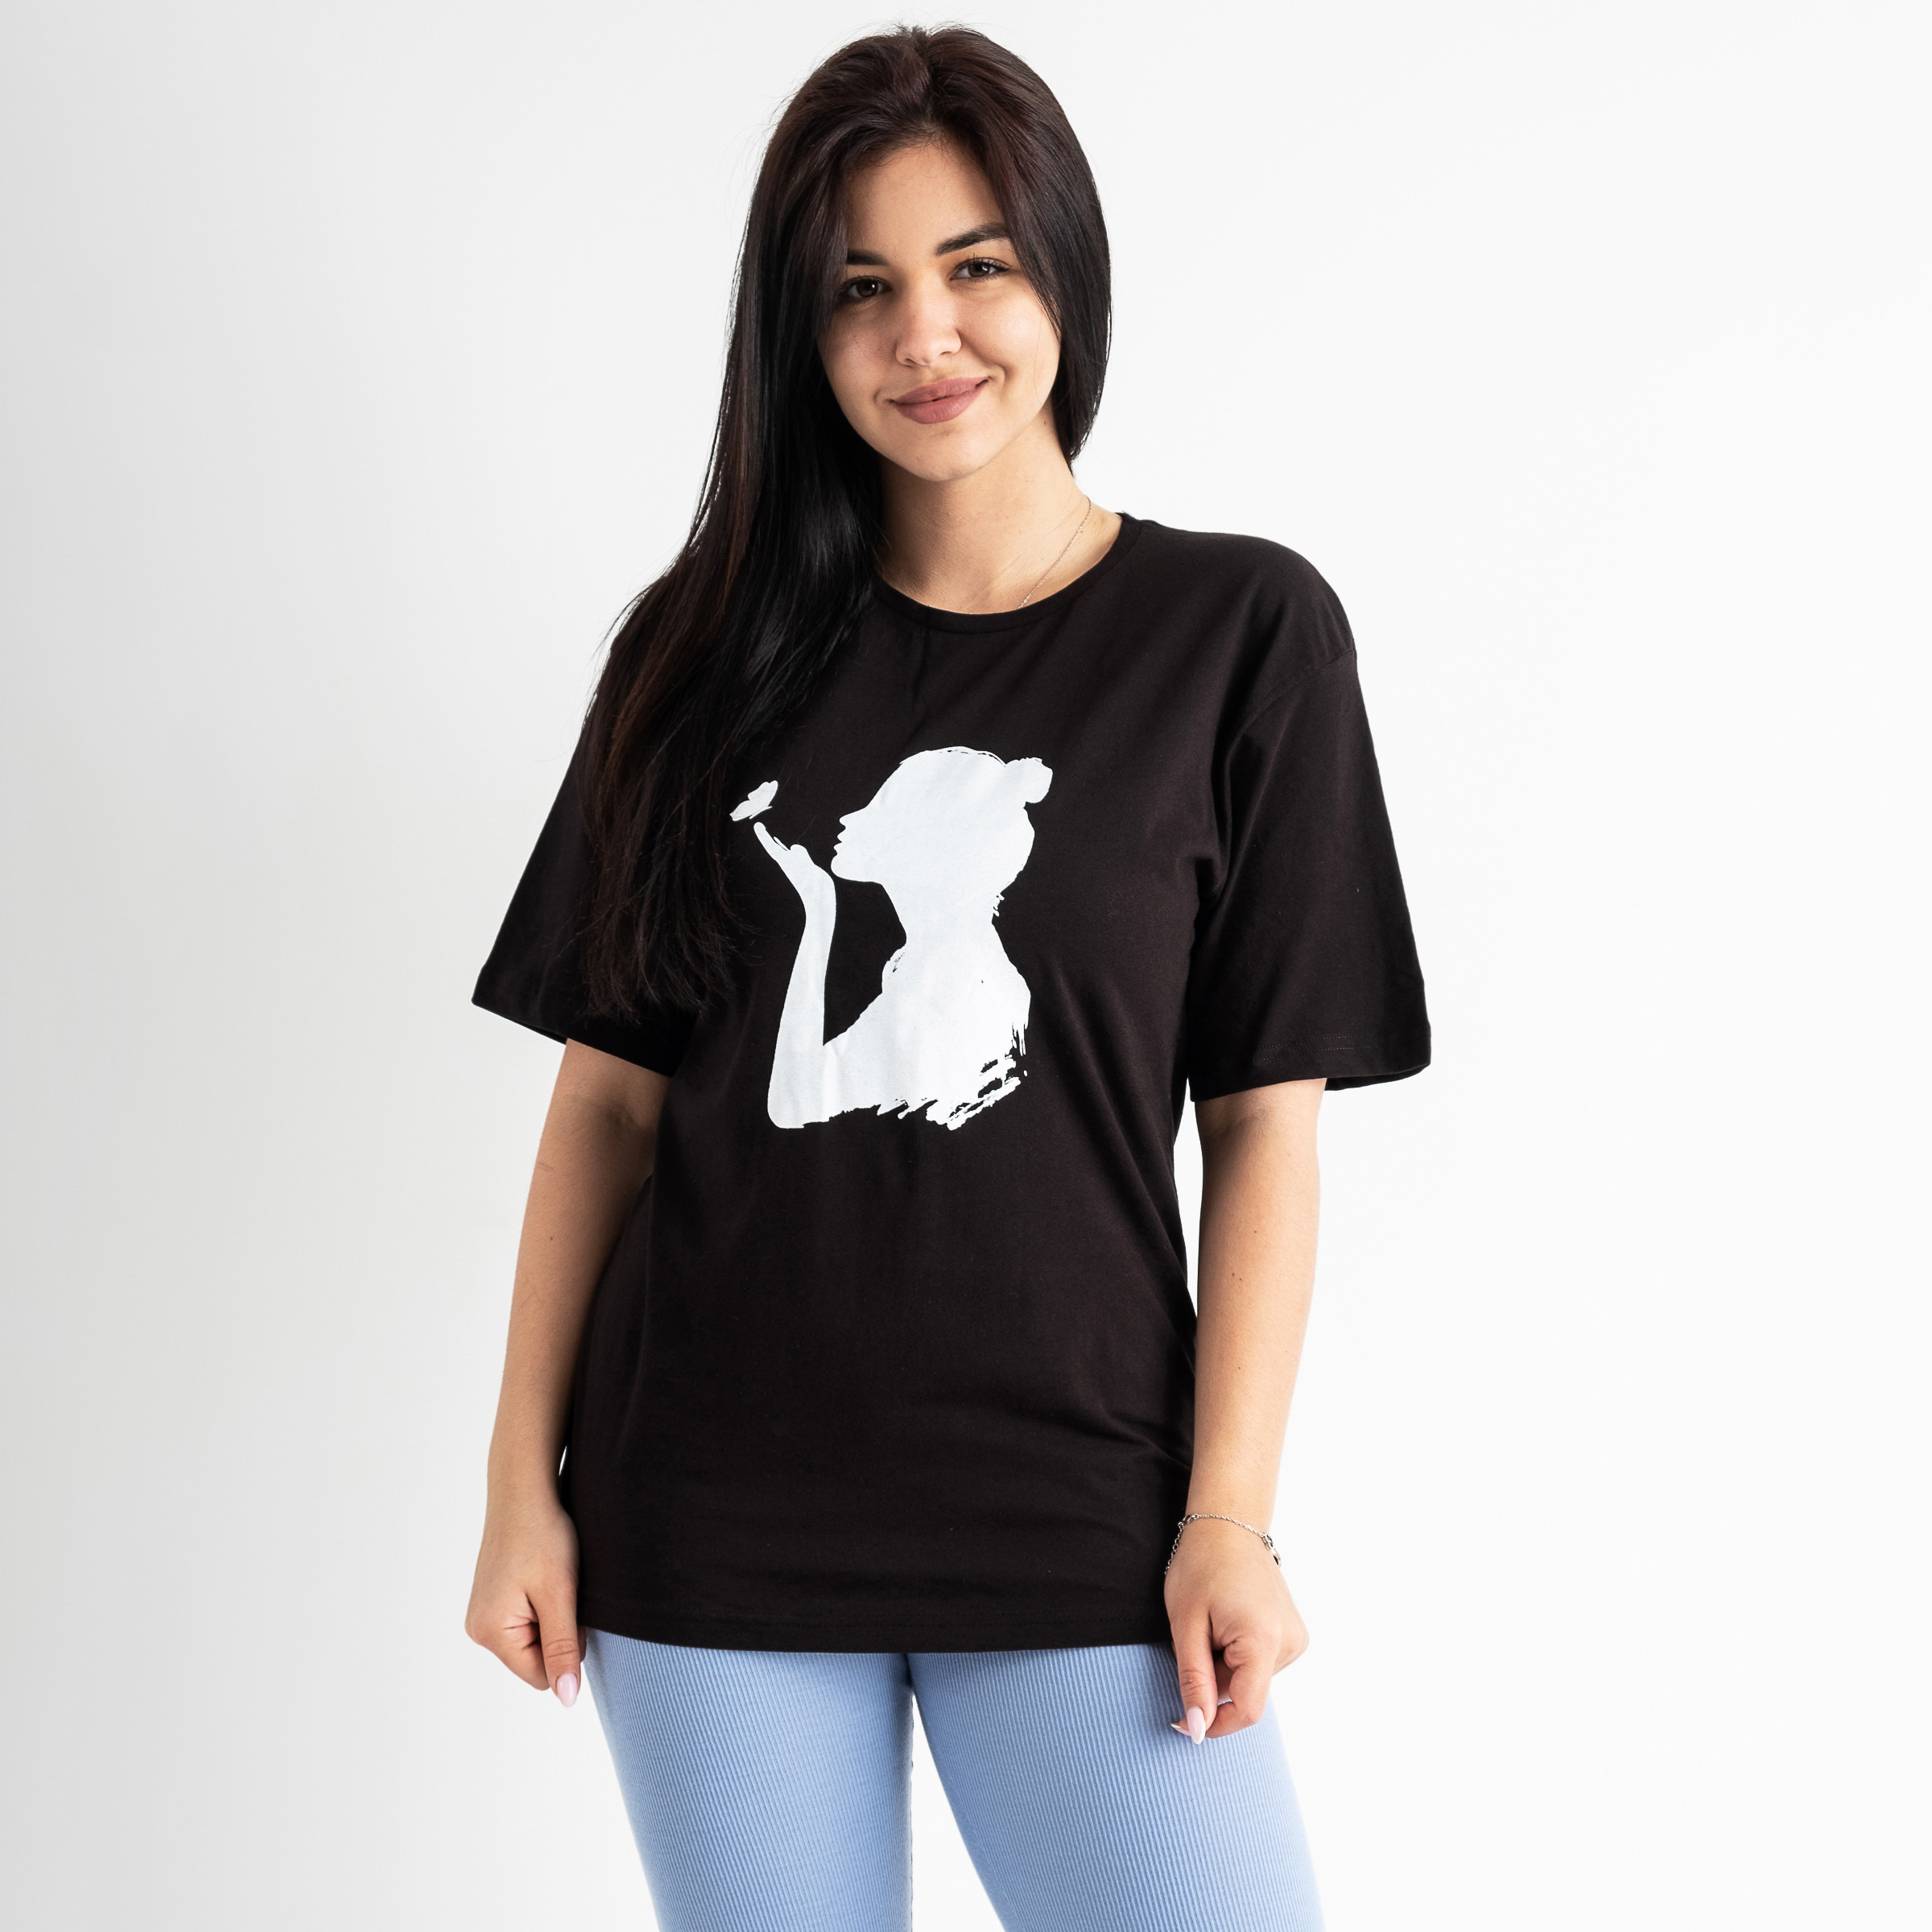 9133 ЧЕРНАЯ футболка женская с принтом ( 6 ед.размеры: S-M/2.M-L/2.L-XL/2)